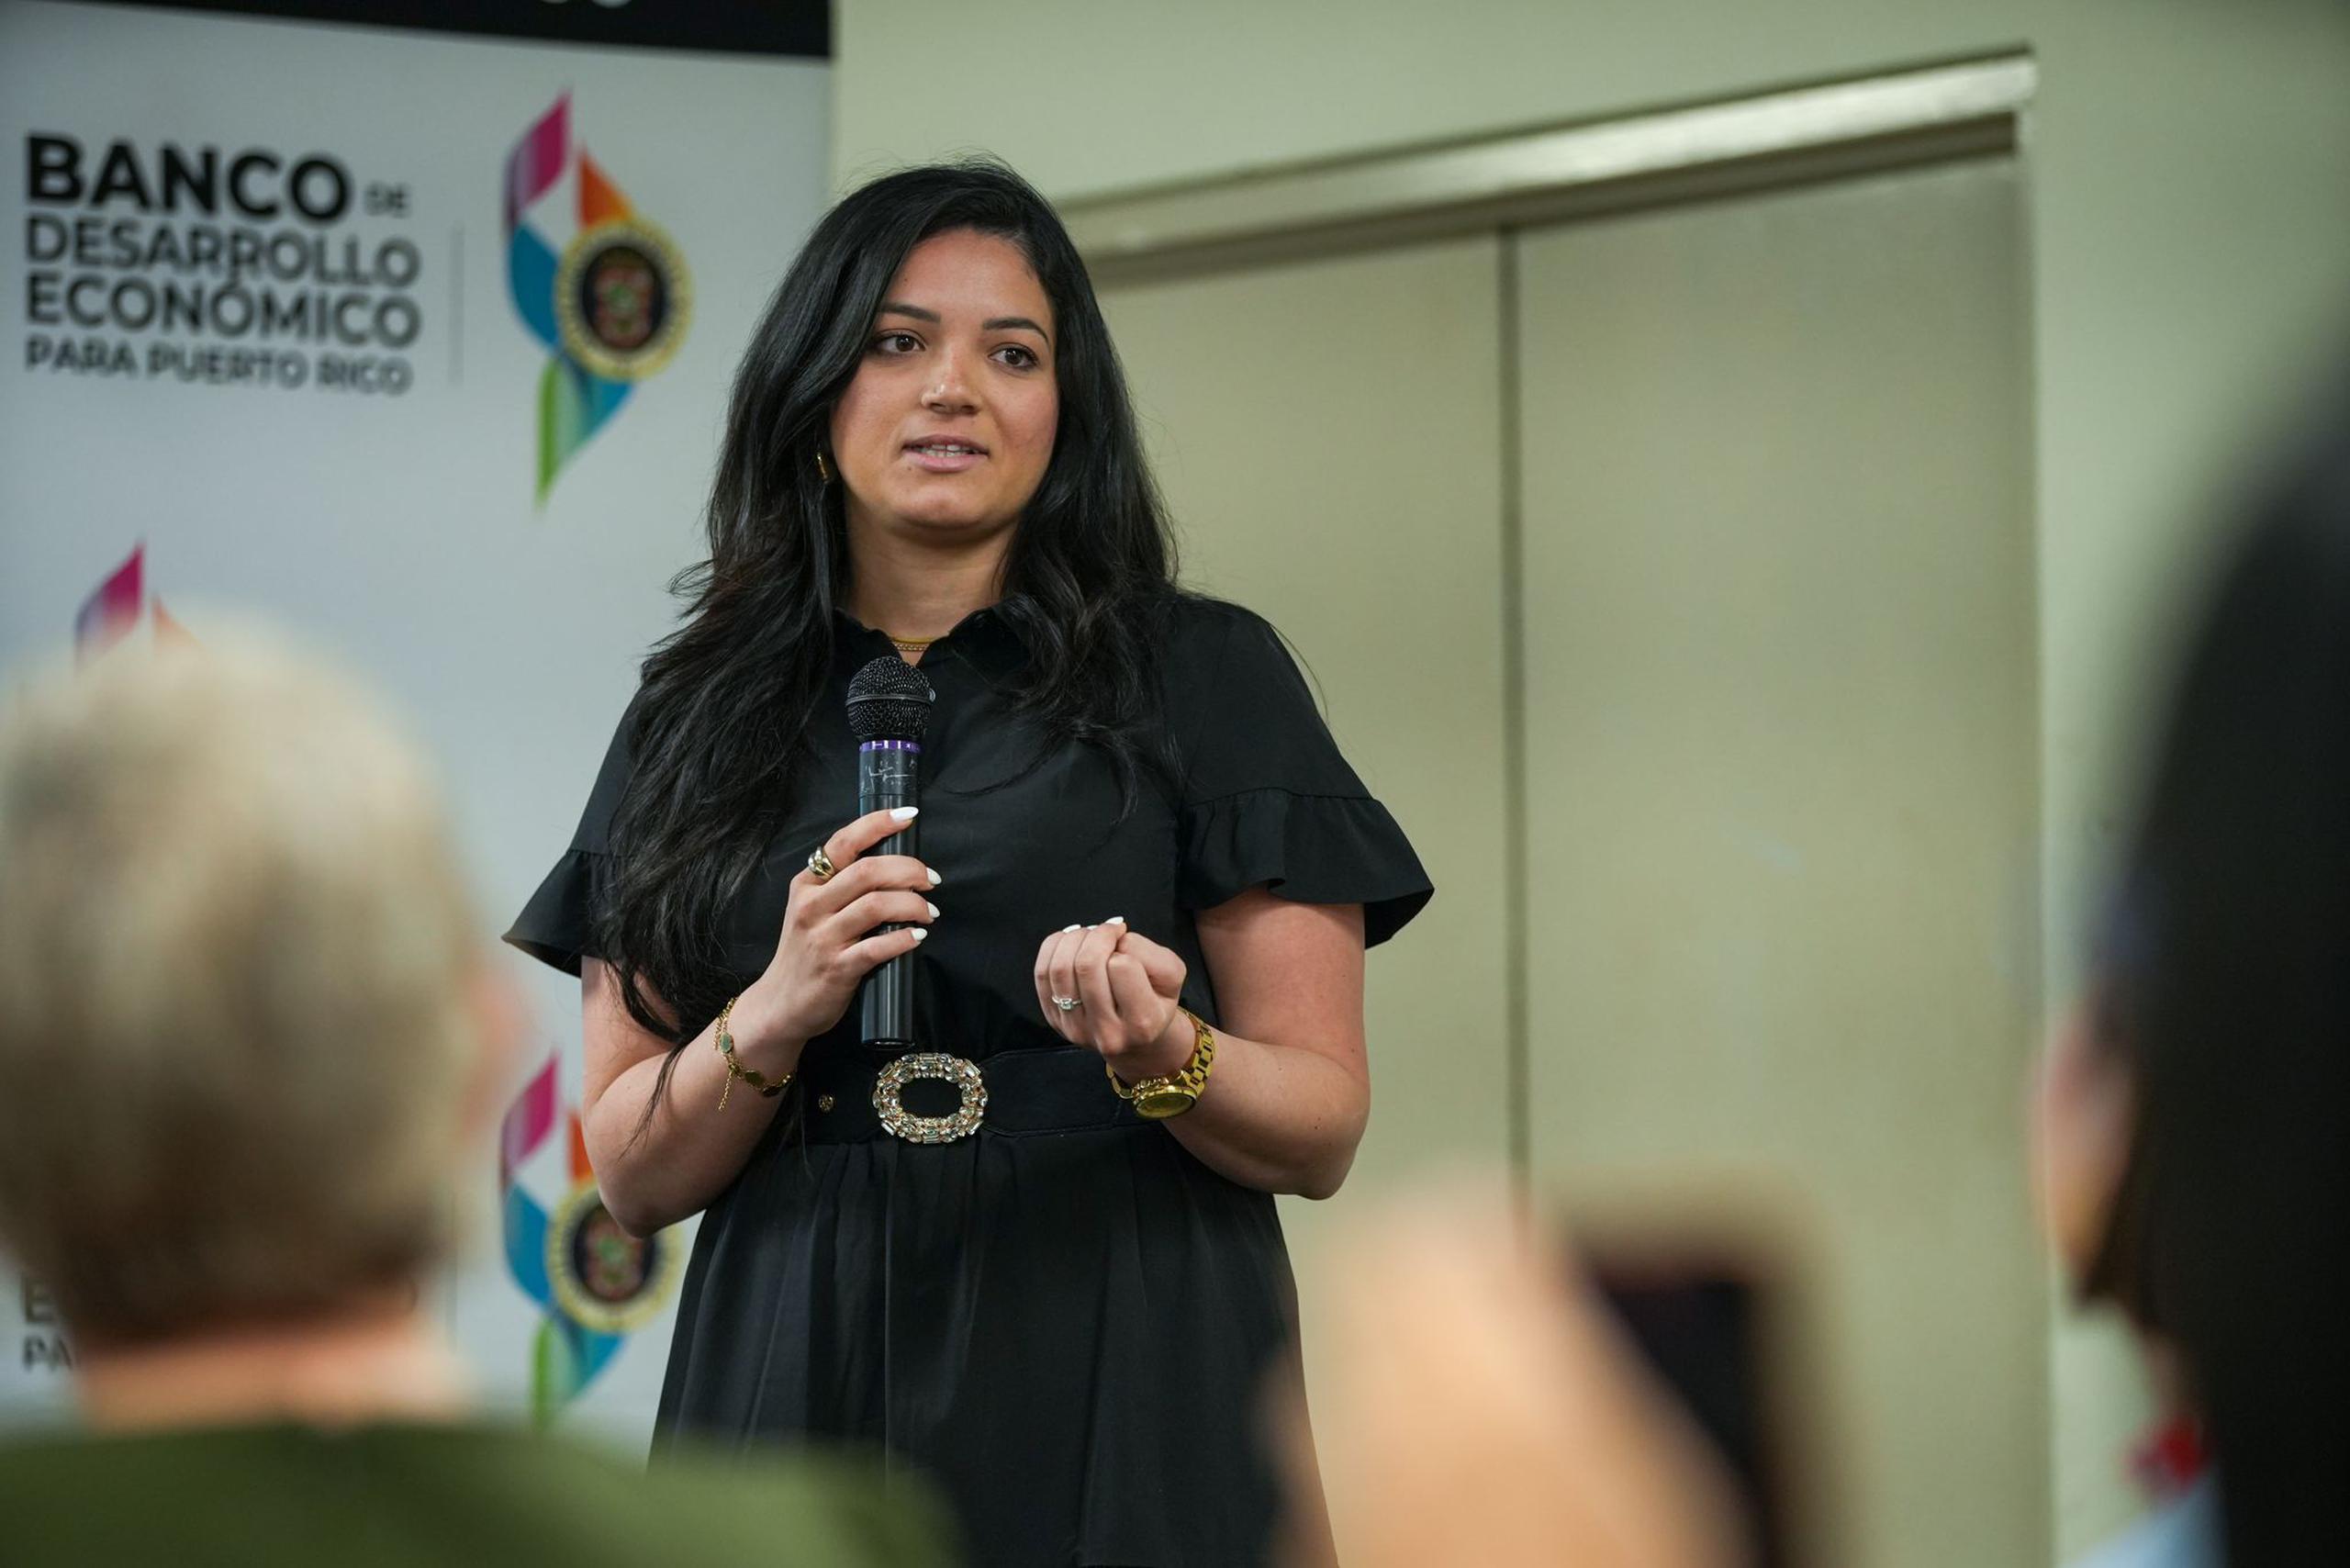 Paola Carvajal, quien participó de la conferencia de presa, es una joven emprendedora que cuenta ya con su propia empresa de dispositivos médicos.